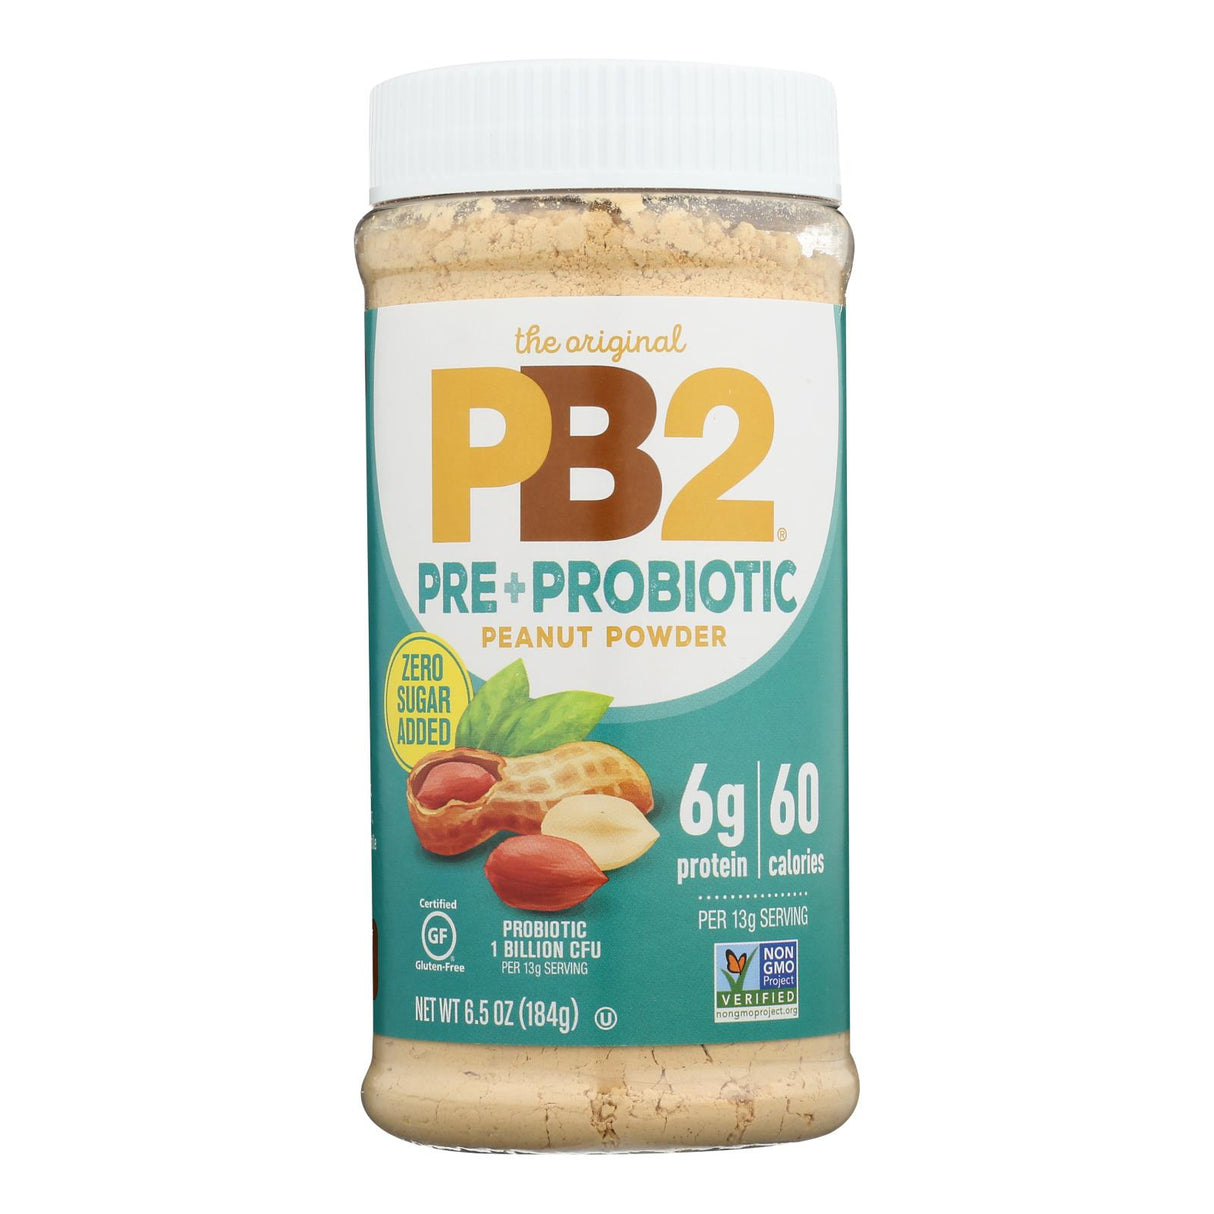 Pb2 - Pre+Probiotic Peanut Powder - Box of 6 - 6.5 Oz - Cozy Farm 